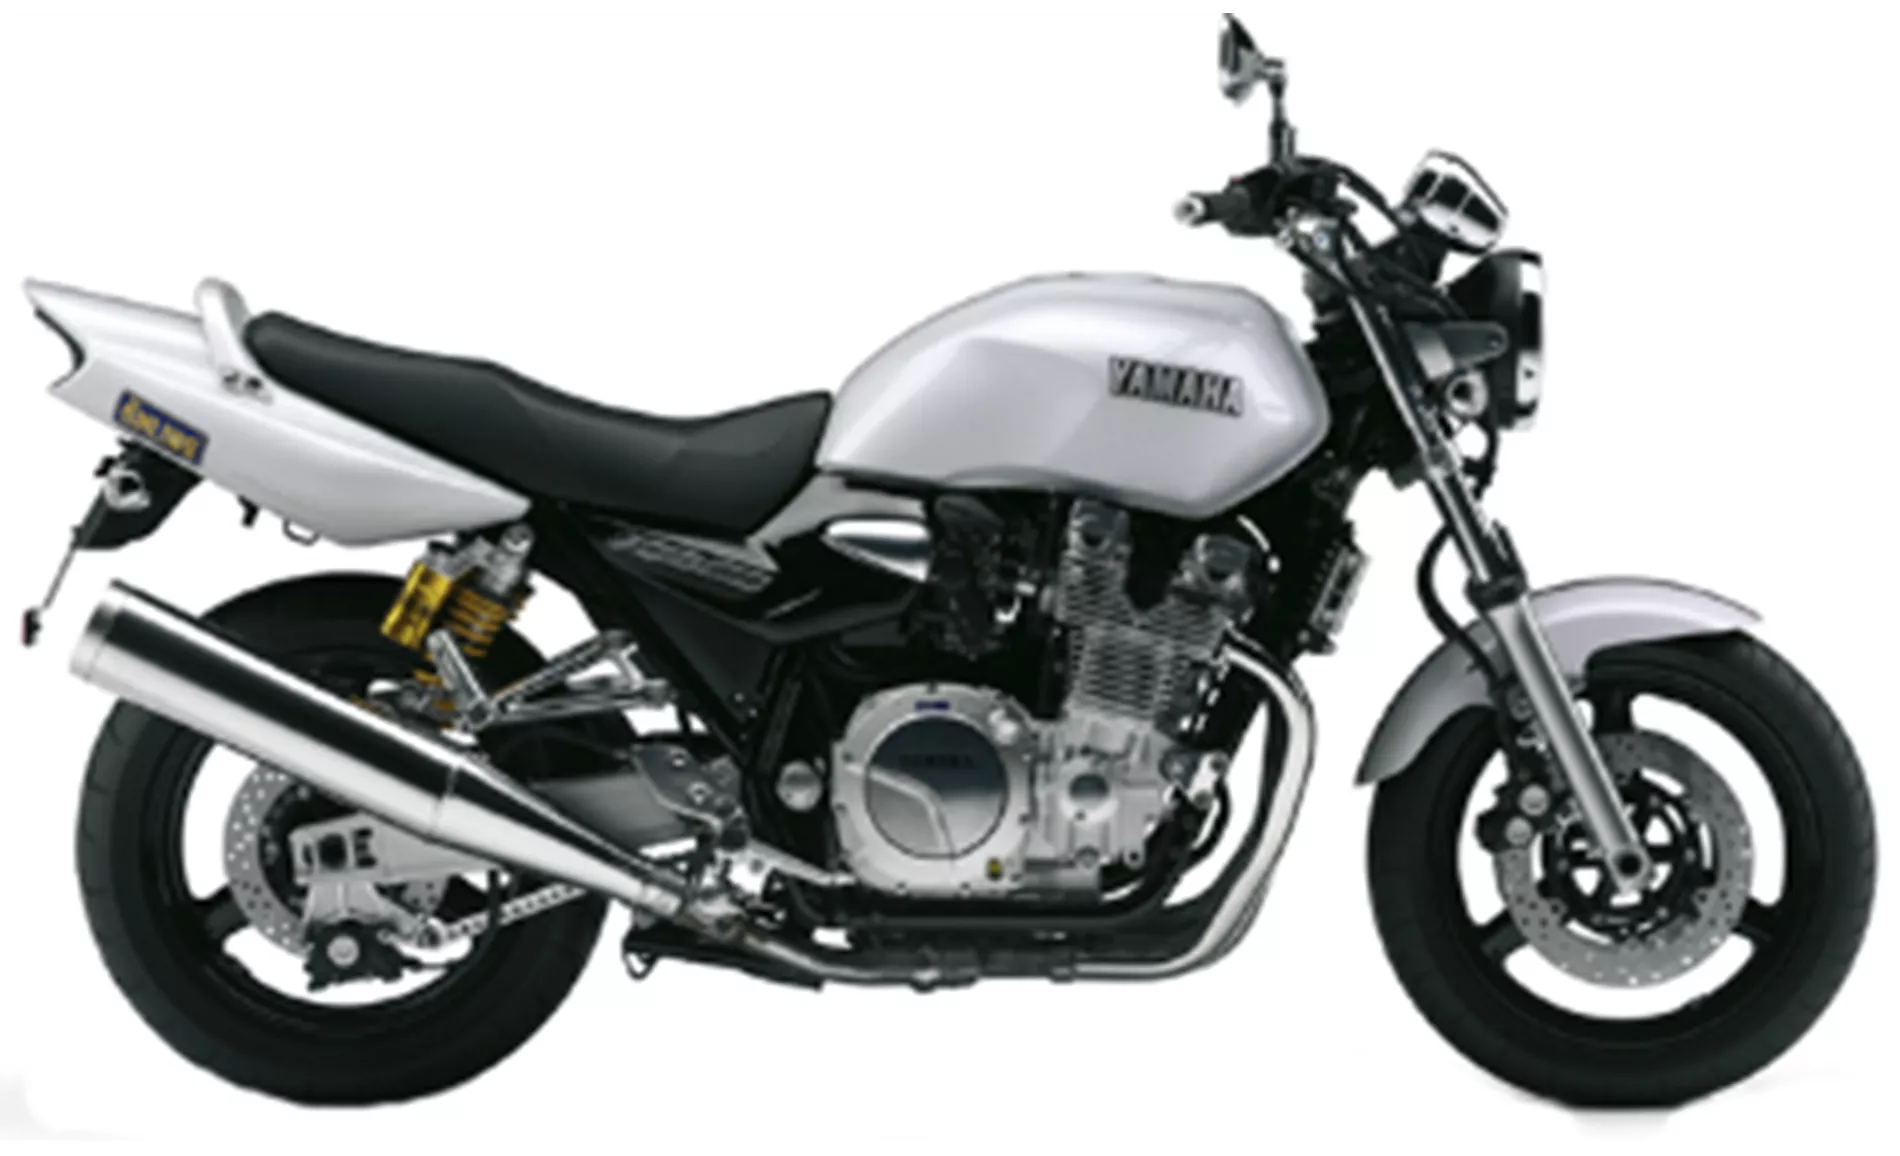 Yamaha XJR 1300 2008